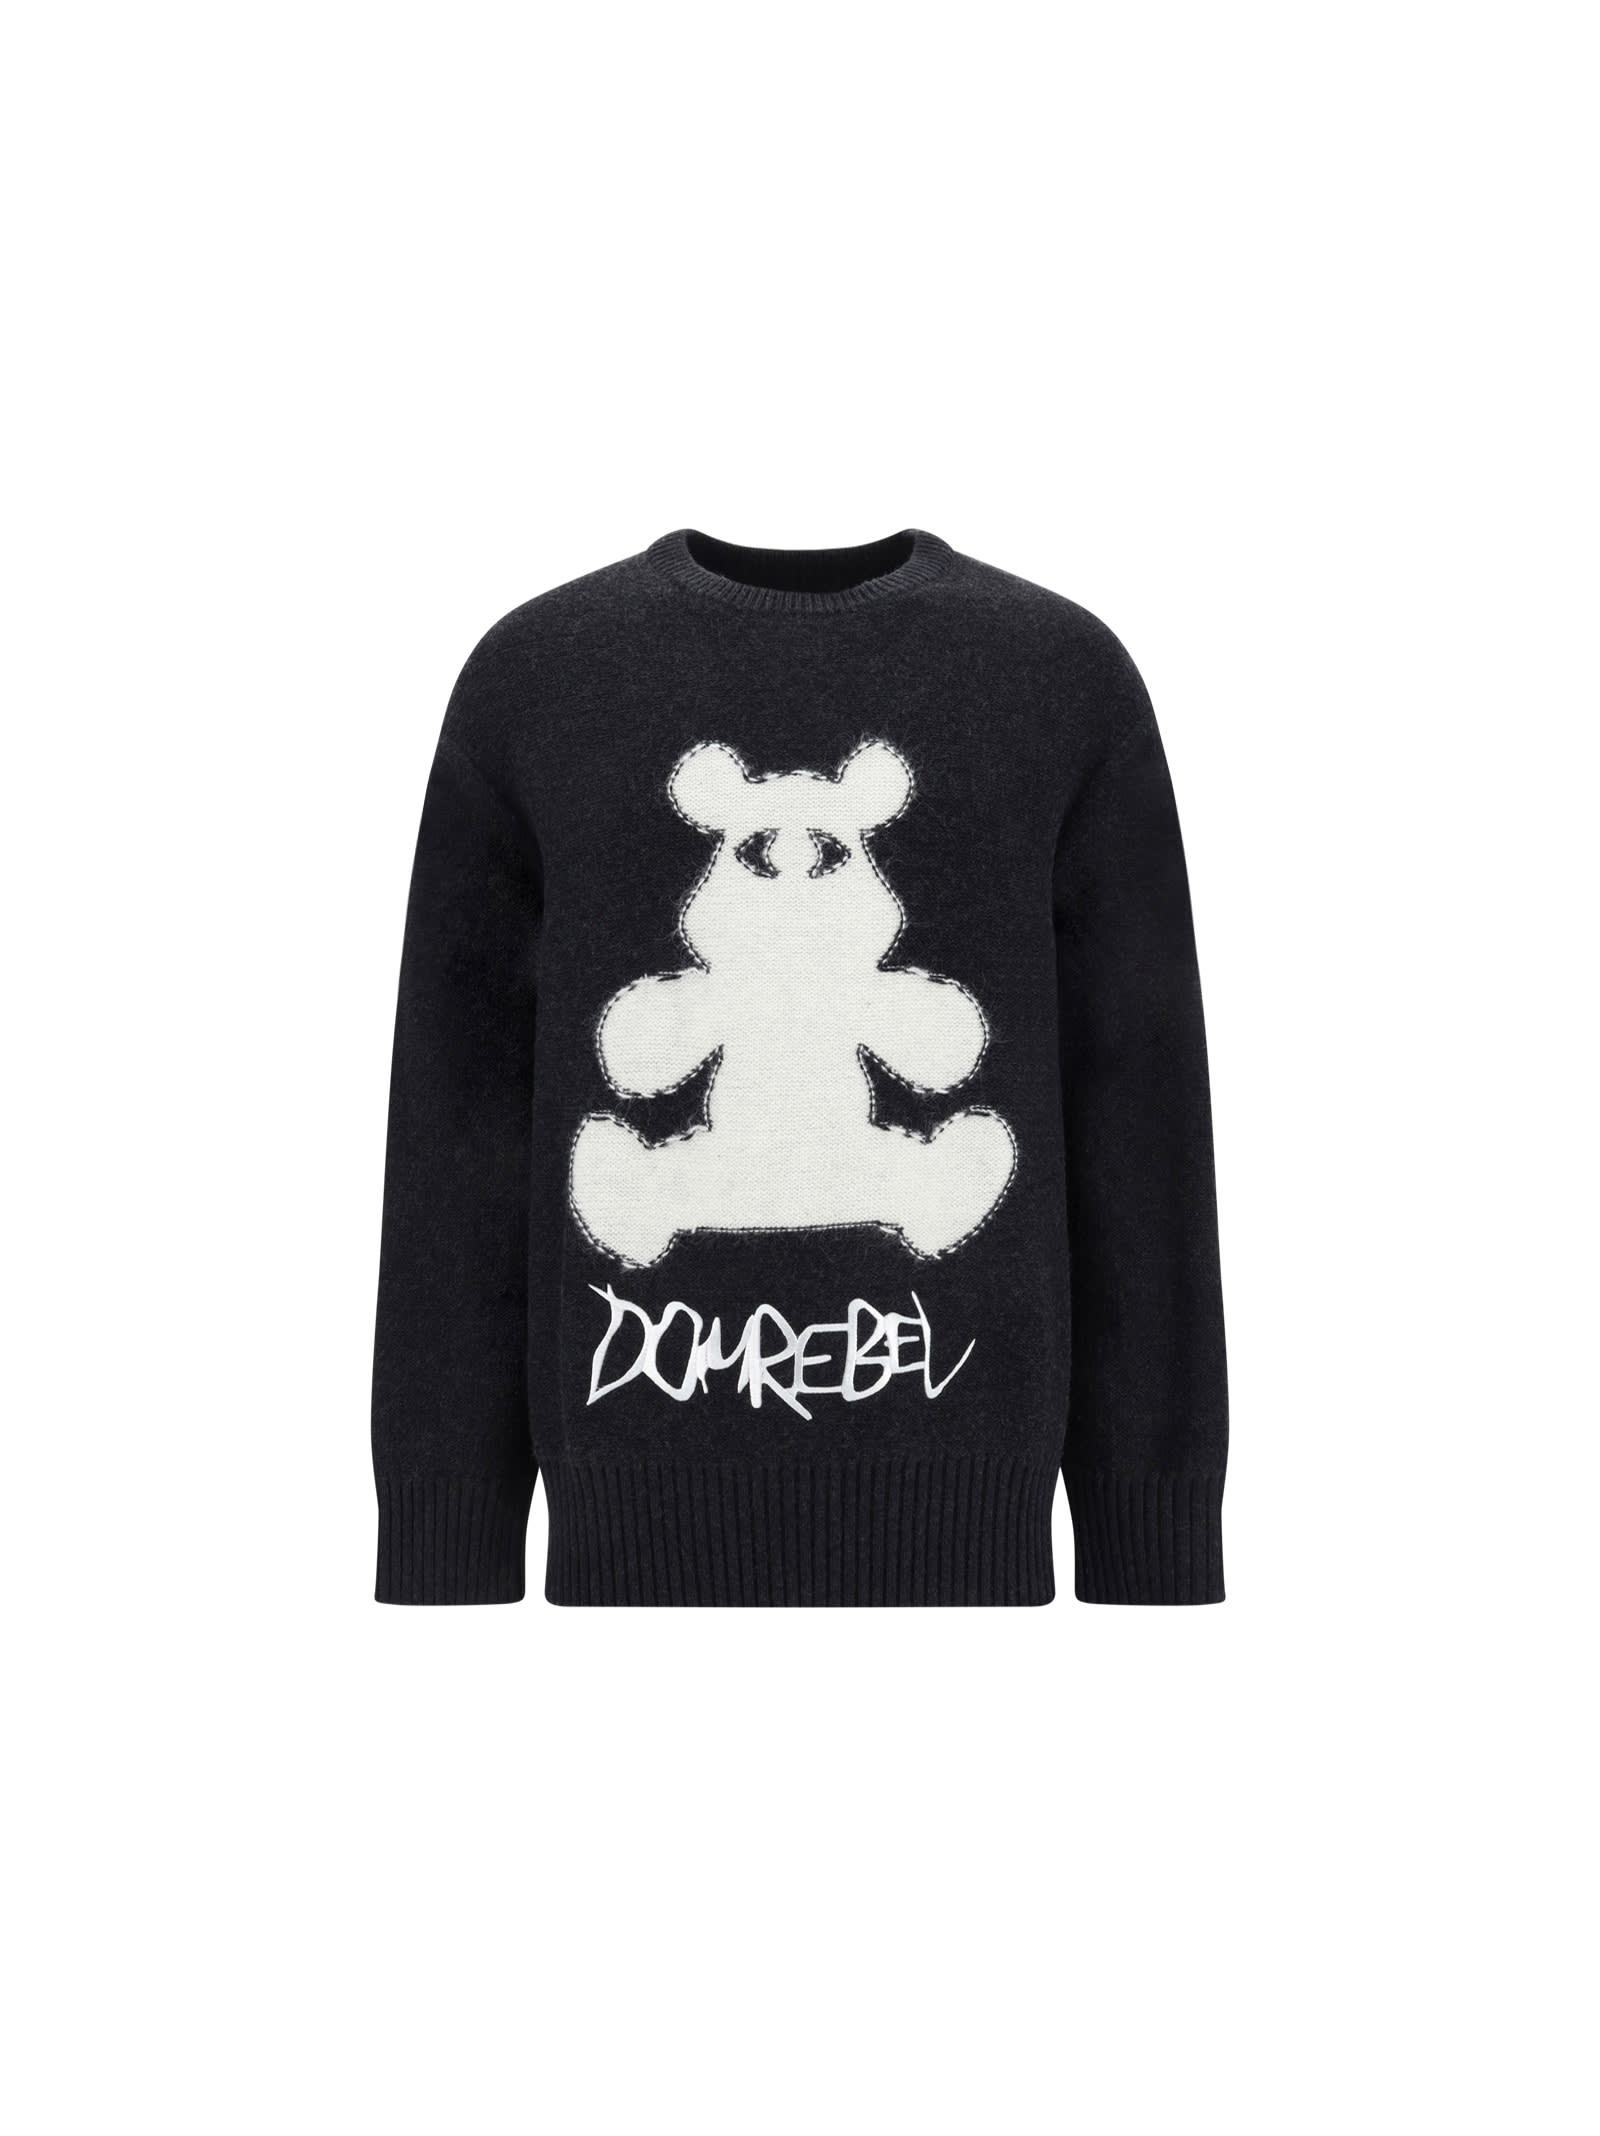 Dom Rebel Bearclops Sweater